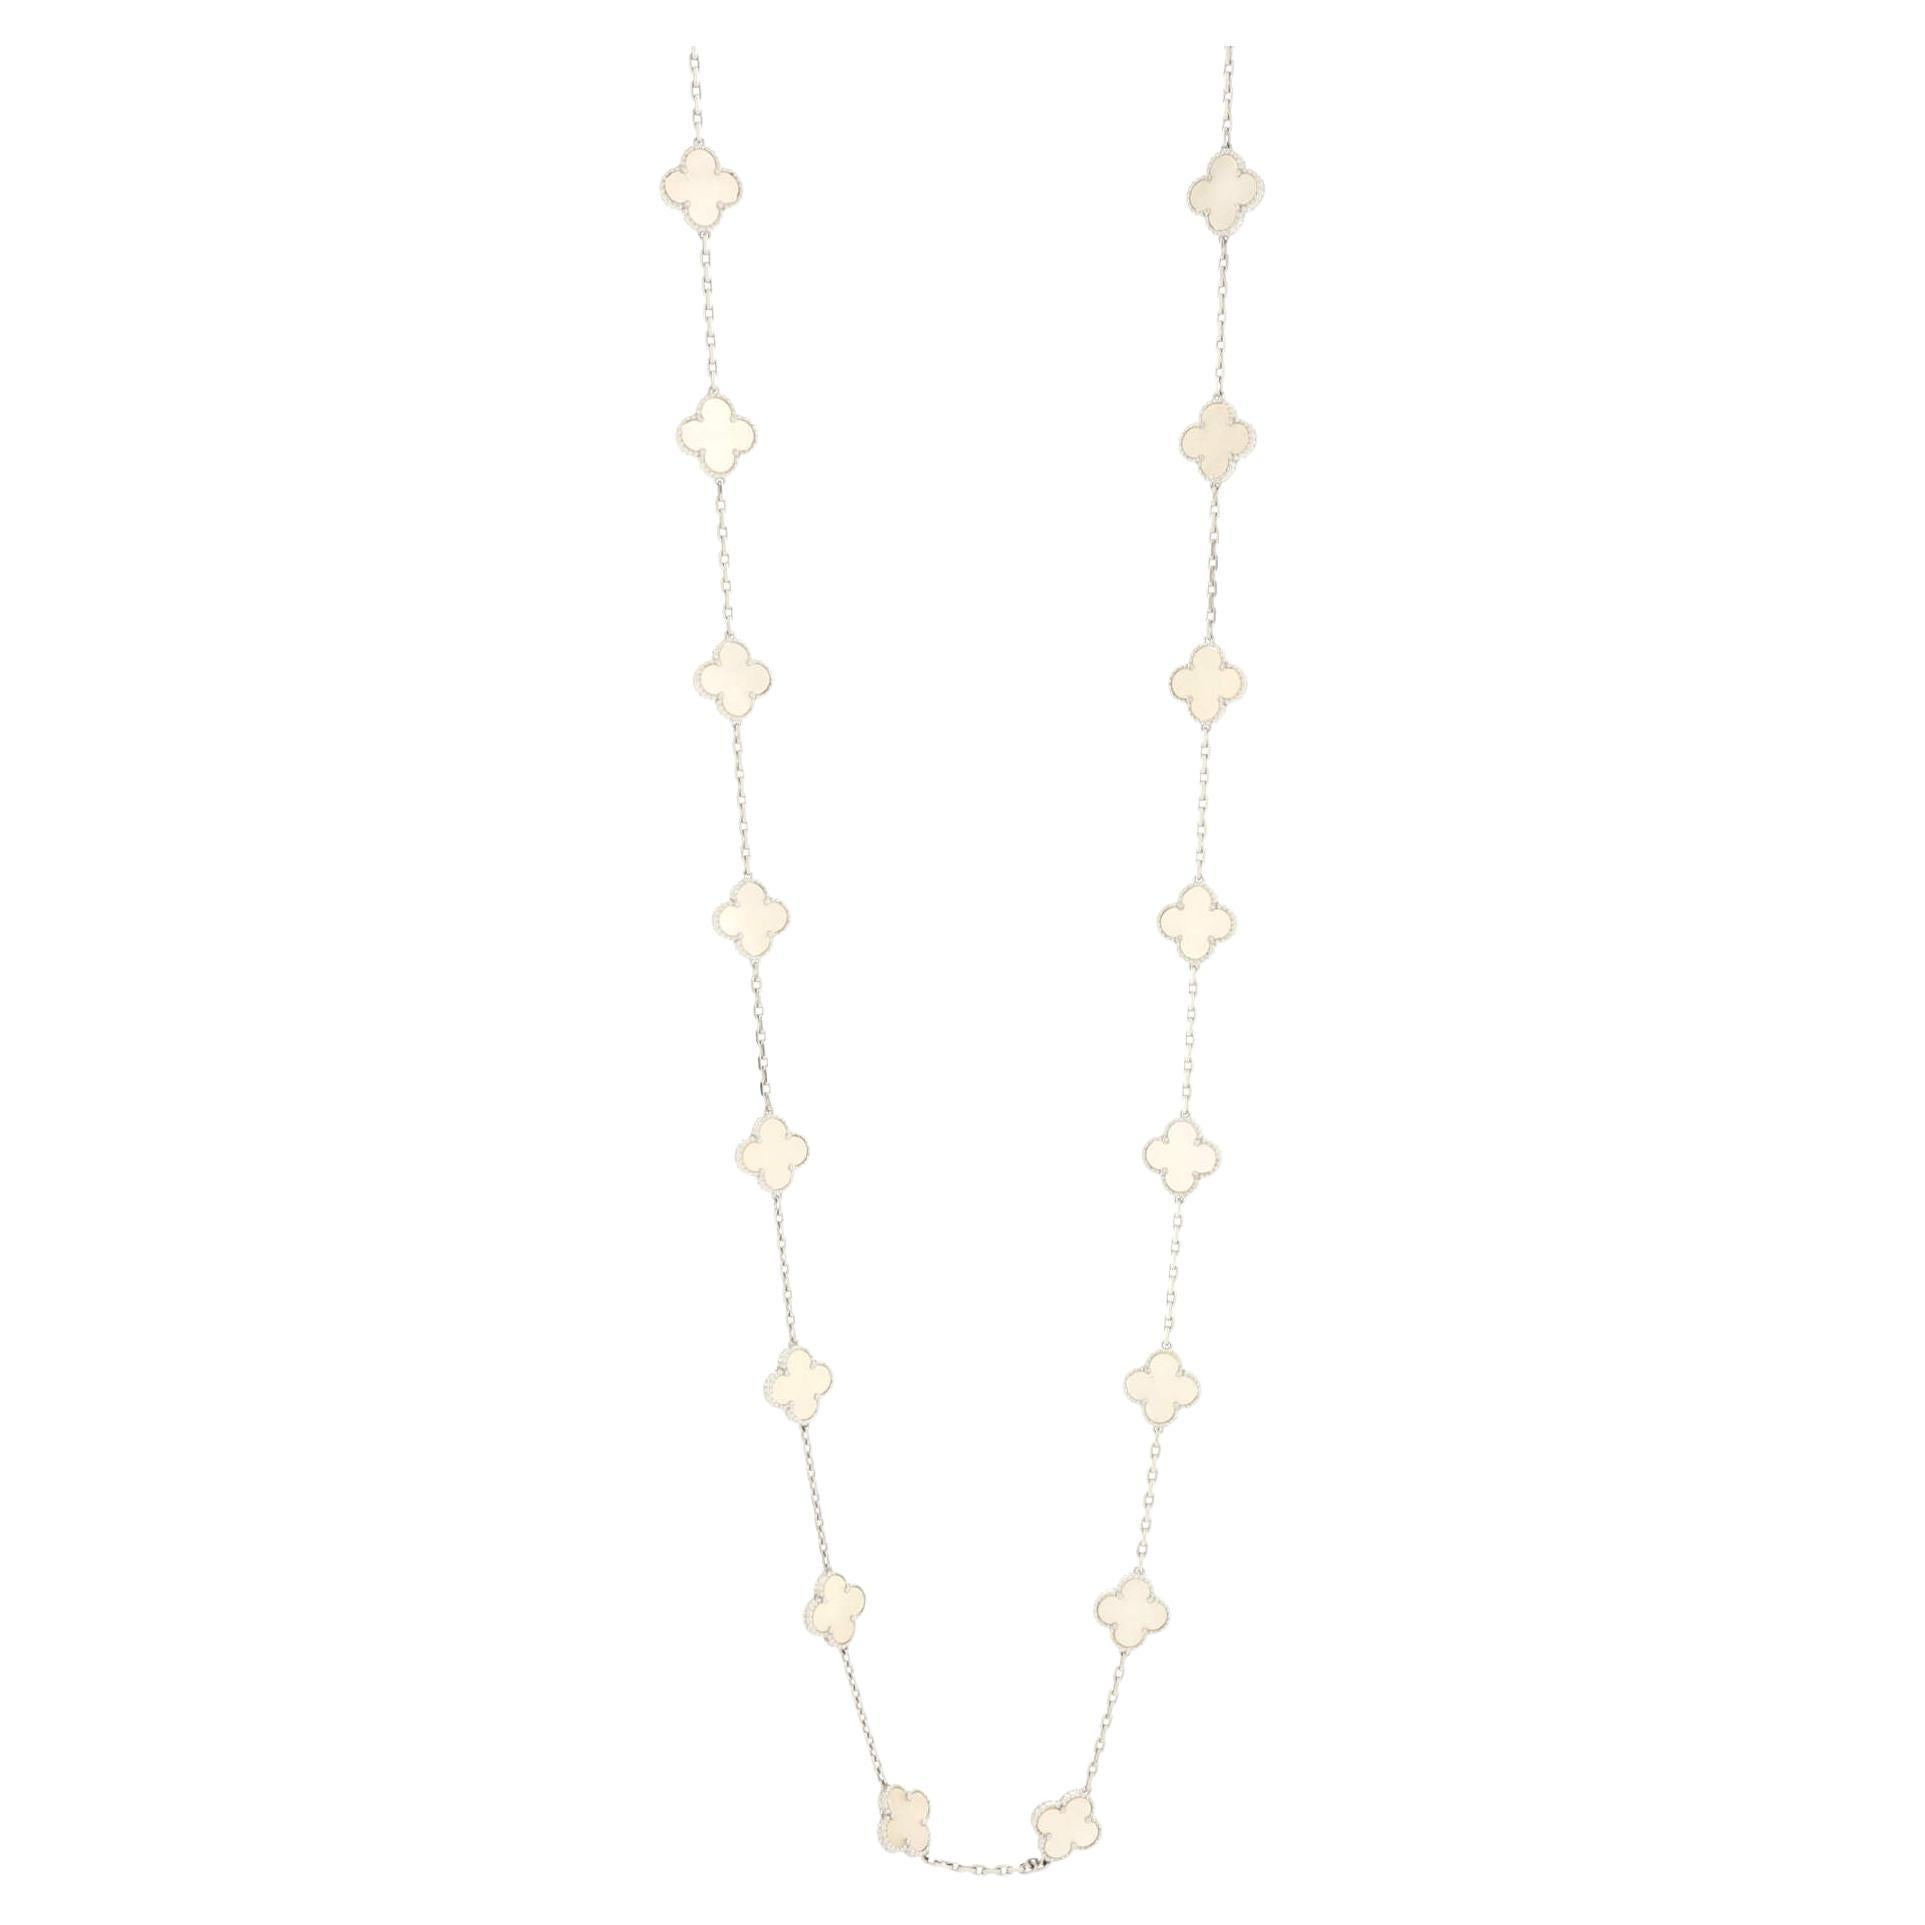 Van Cleef & Arpels Vintage Alhambra 20 Motifs Necklace 18K White Gold and Mother